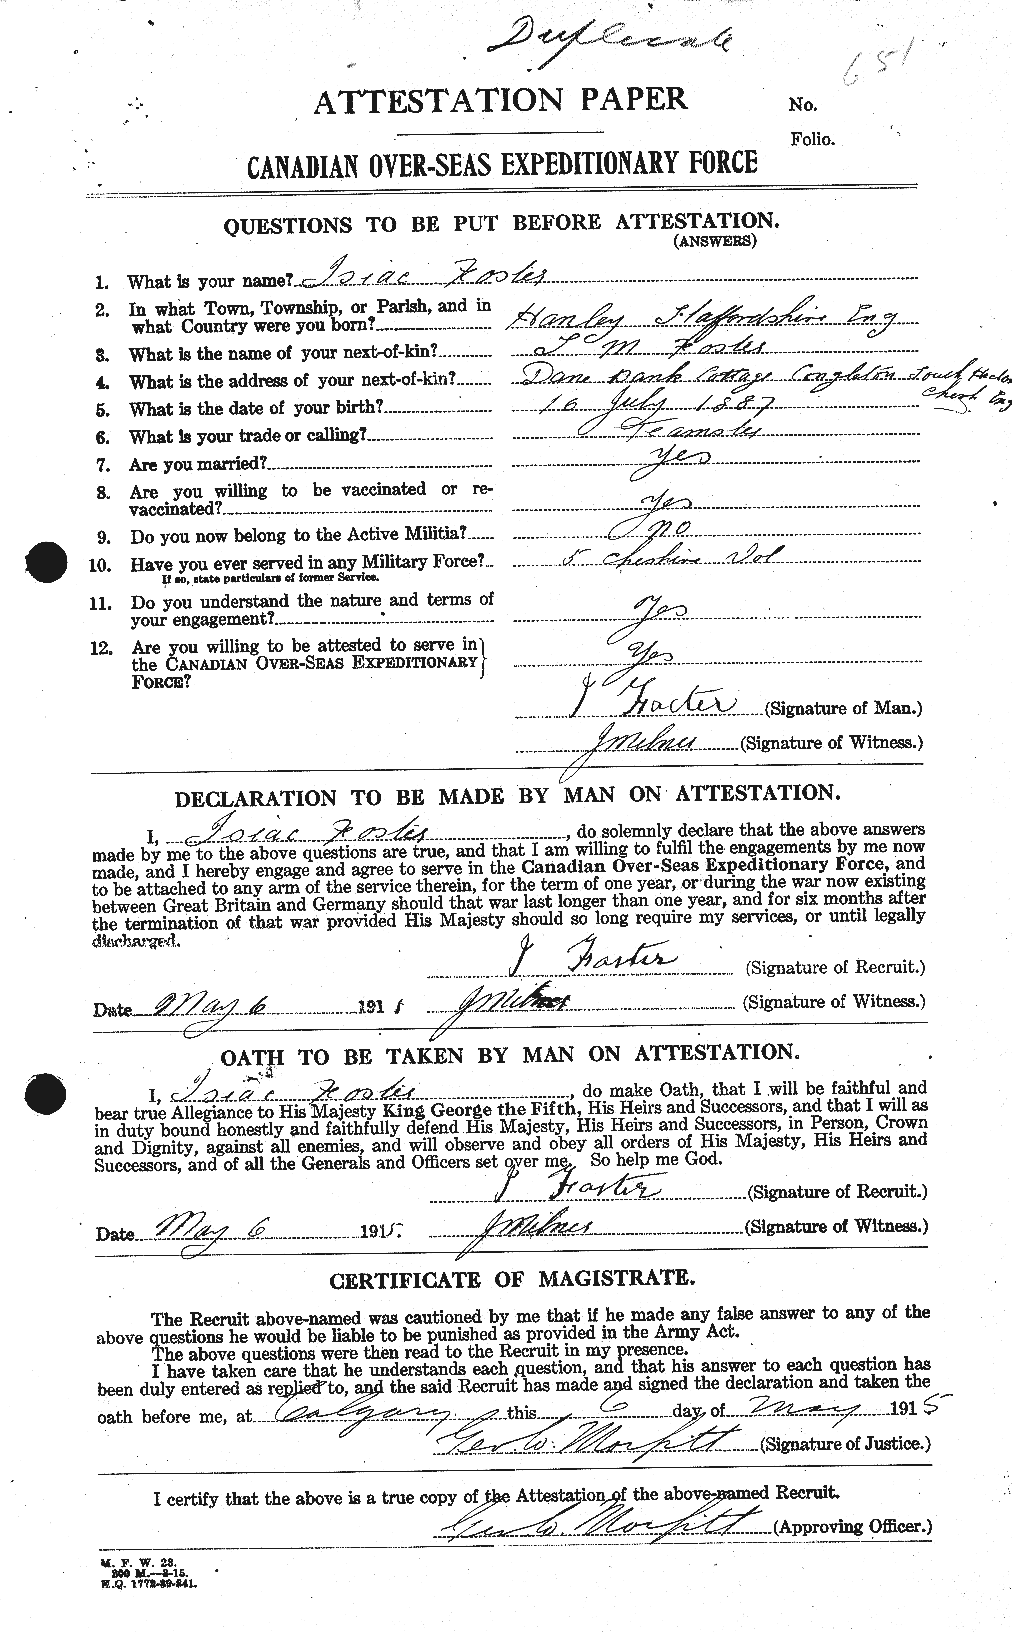 Dossiers du Personnel de la Première Guerre mondiale - CEC 333270a